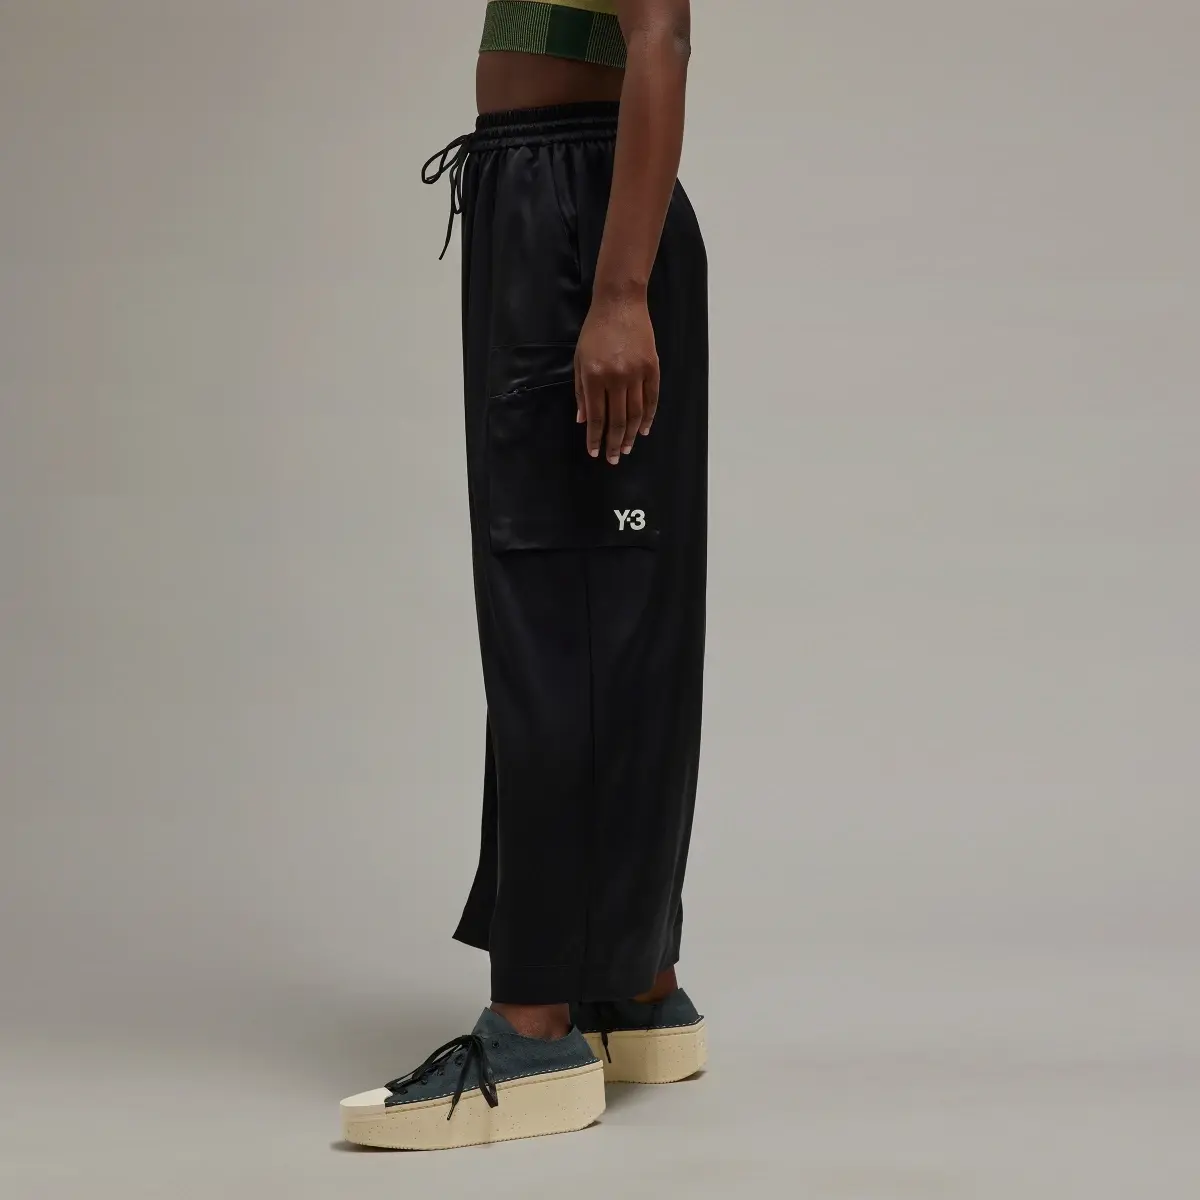 Adidas Y-3 Tech Silk Skirt. 2